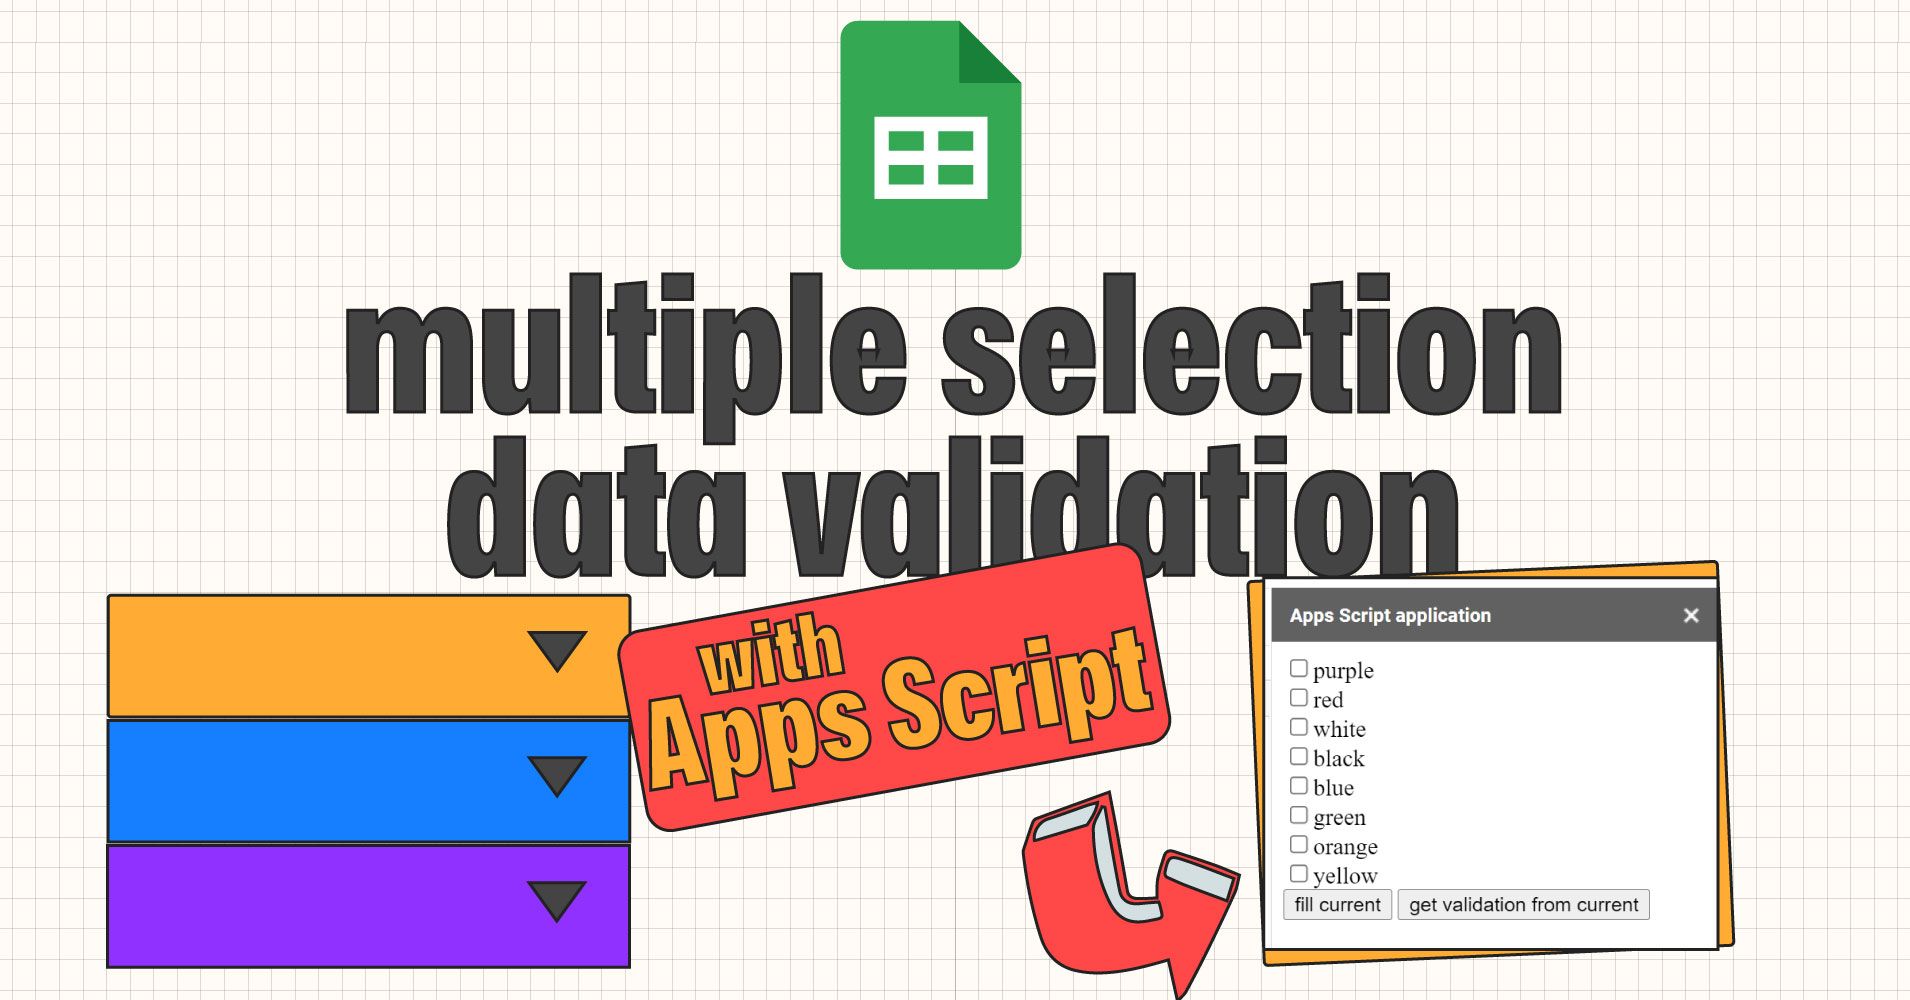 Tutorial de Google Sheets: Cómo habilitar la validación de datos en selección múltiple usando Apps Script